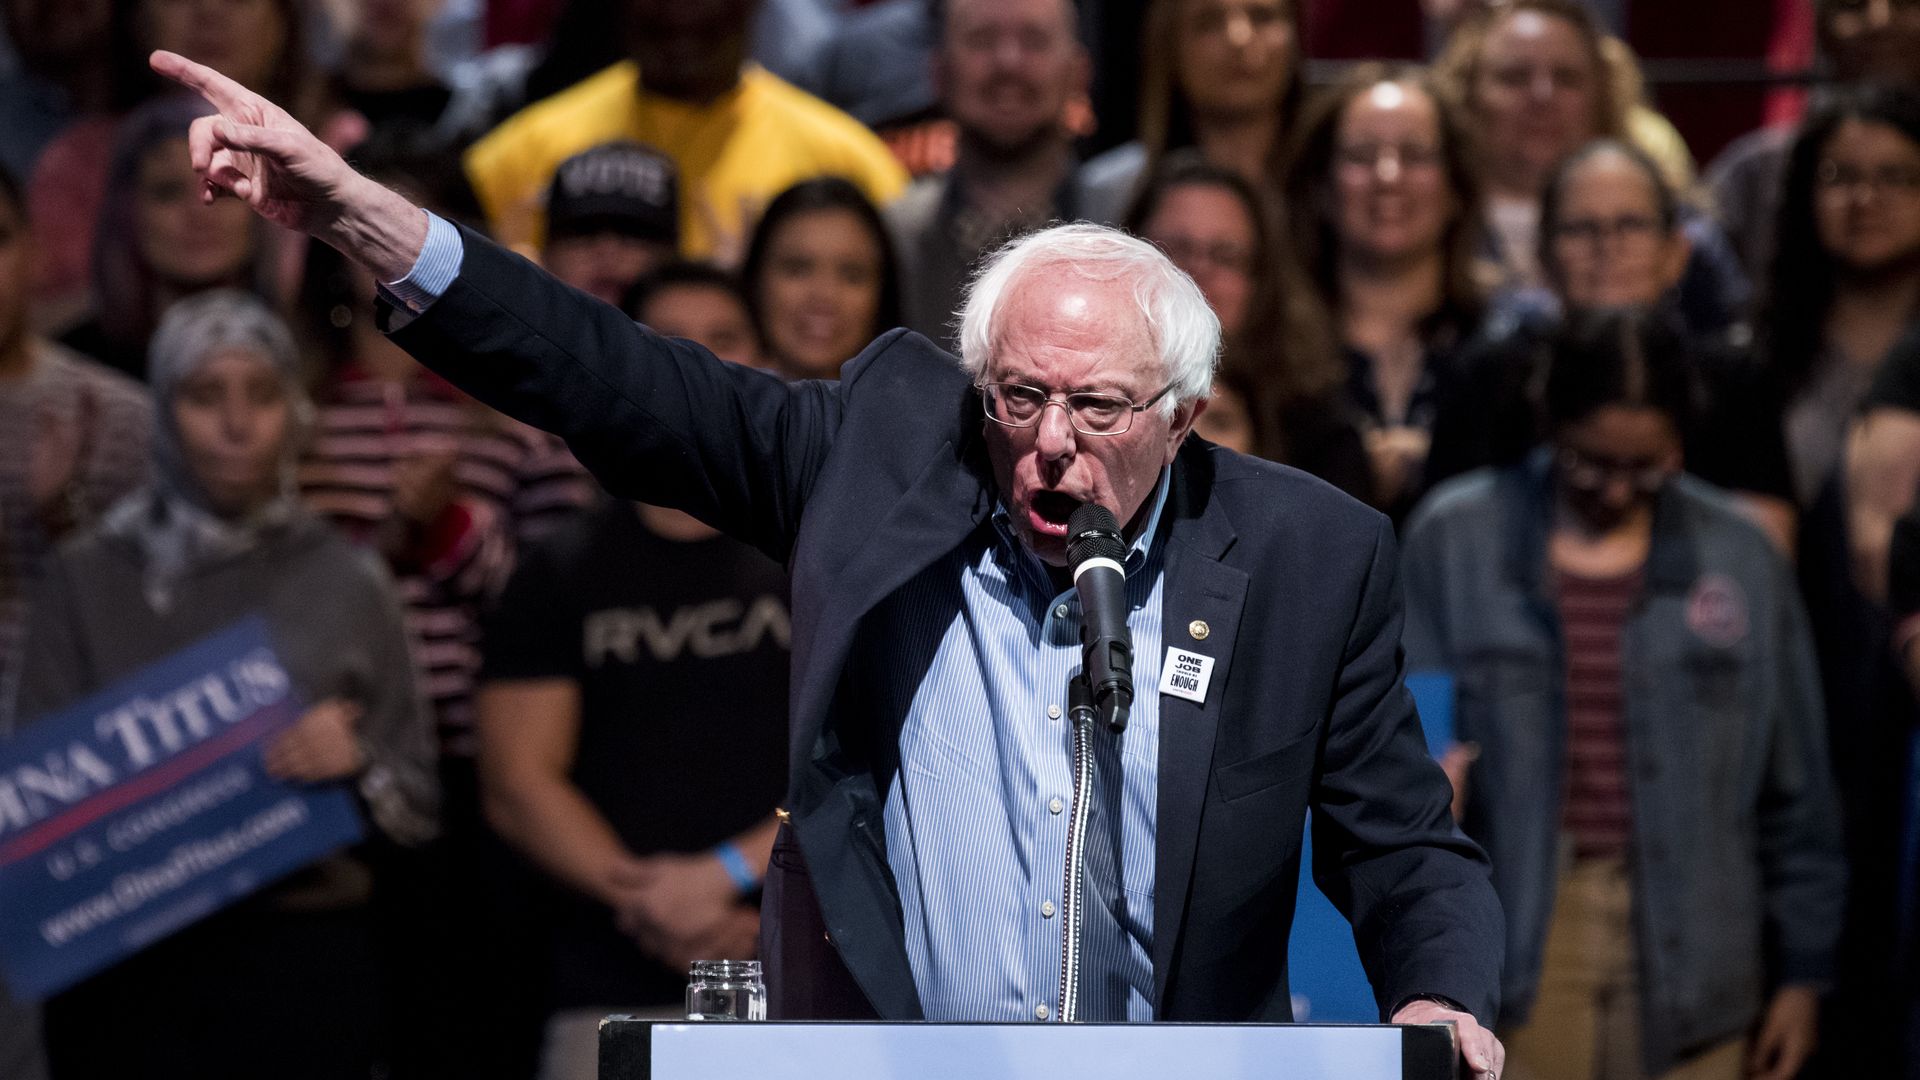 Bernie Sanders speaks at a rally in Nevada in October